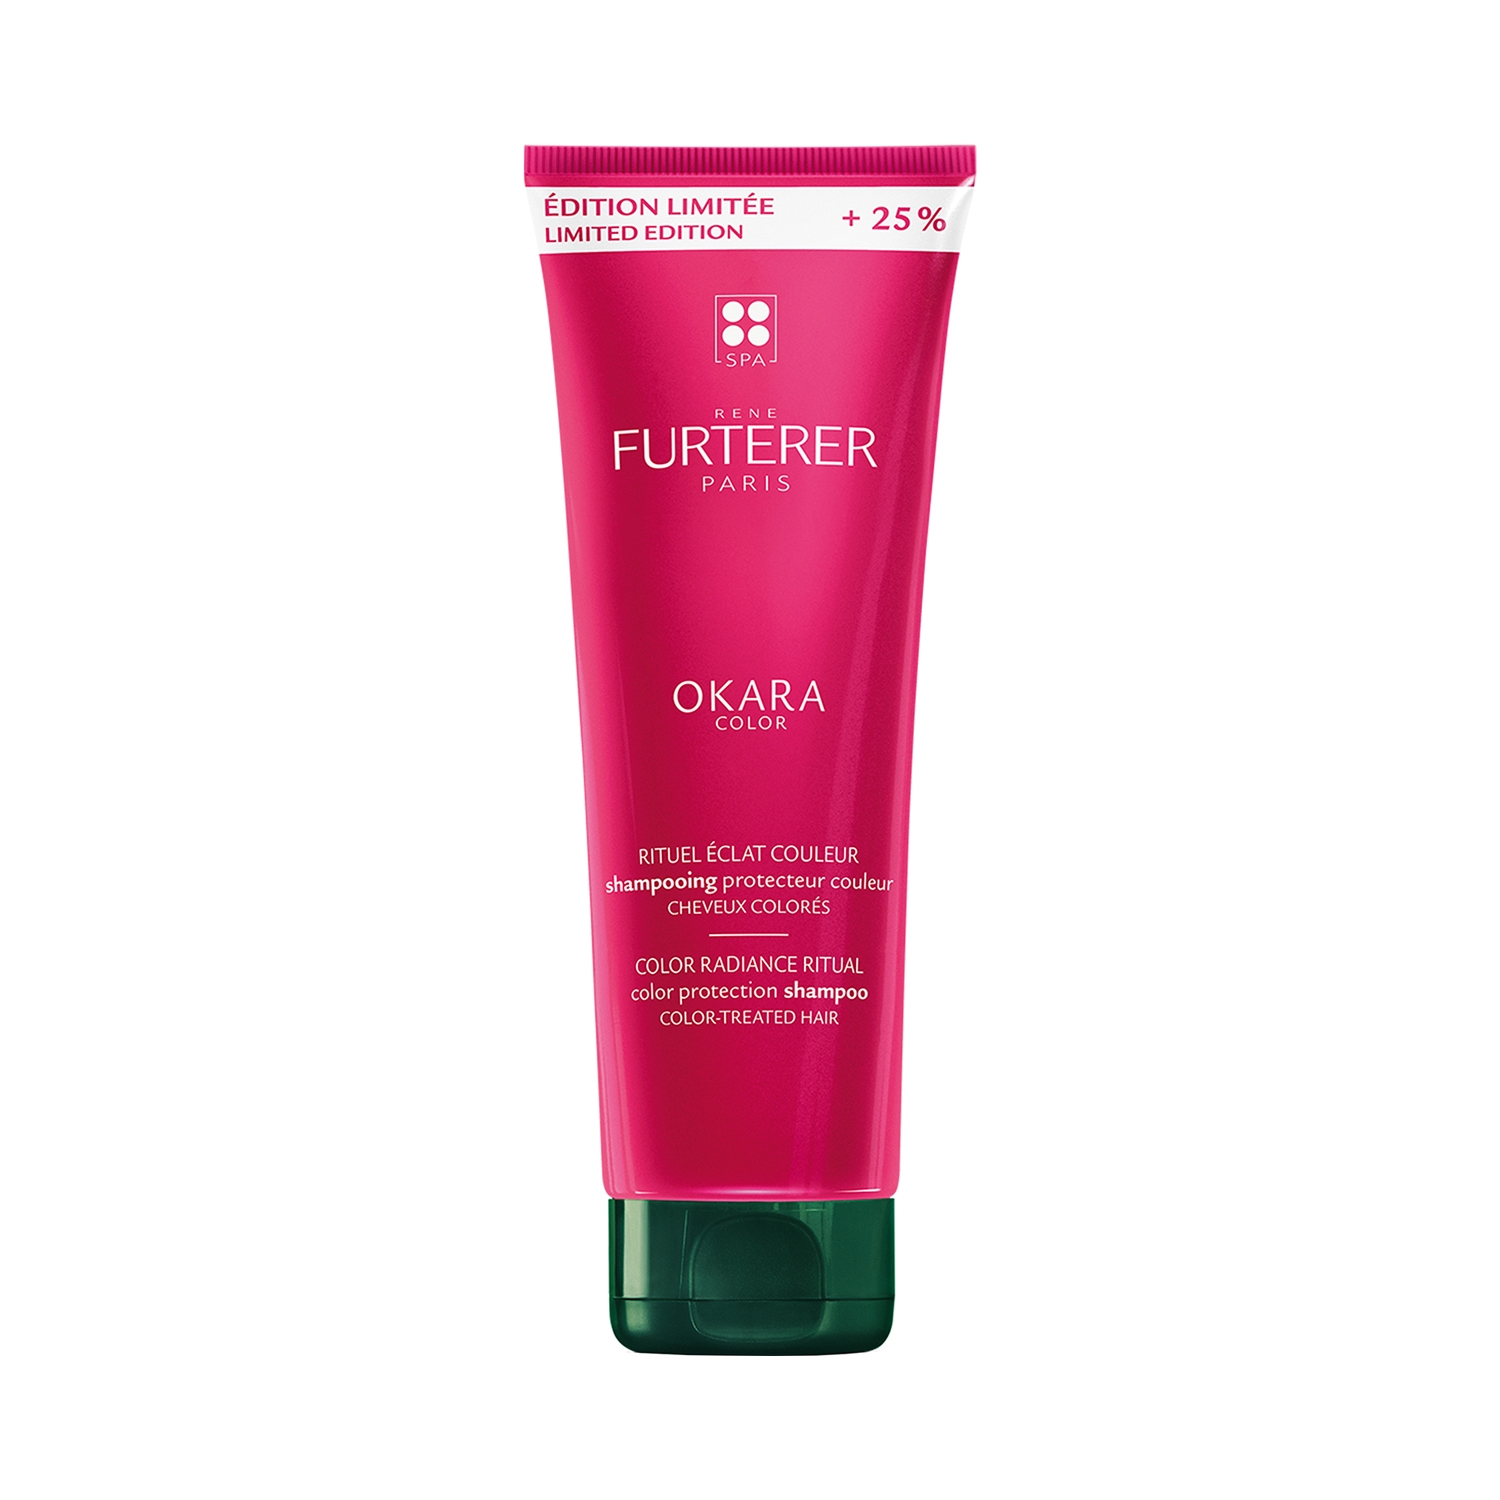 Rene Furterer | Rene Furterer Okara Color Protection Shampoo (250ml)